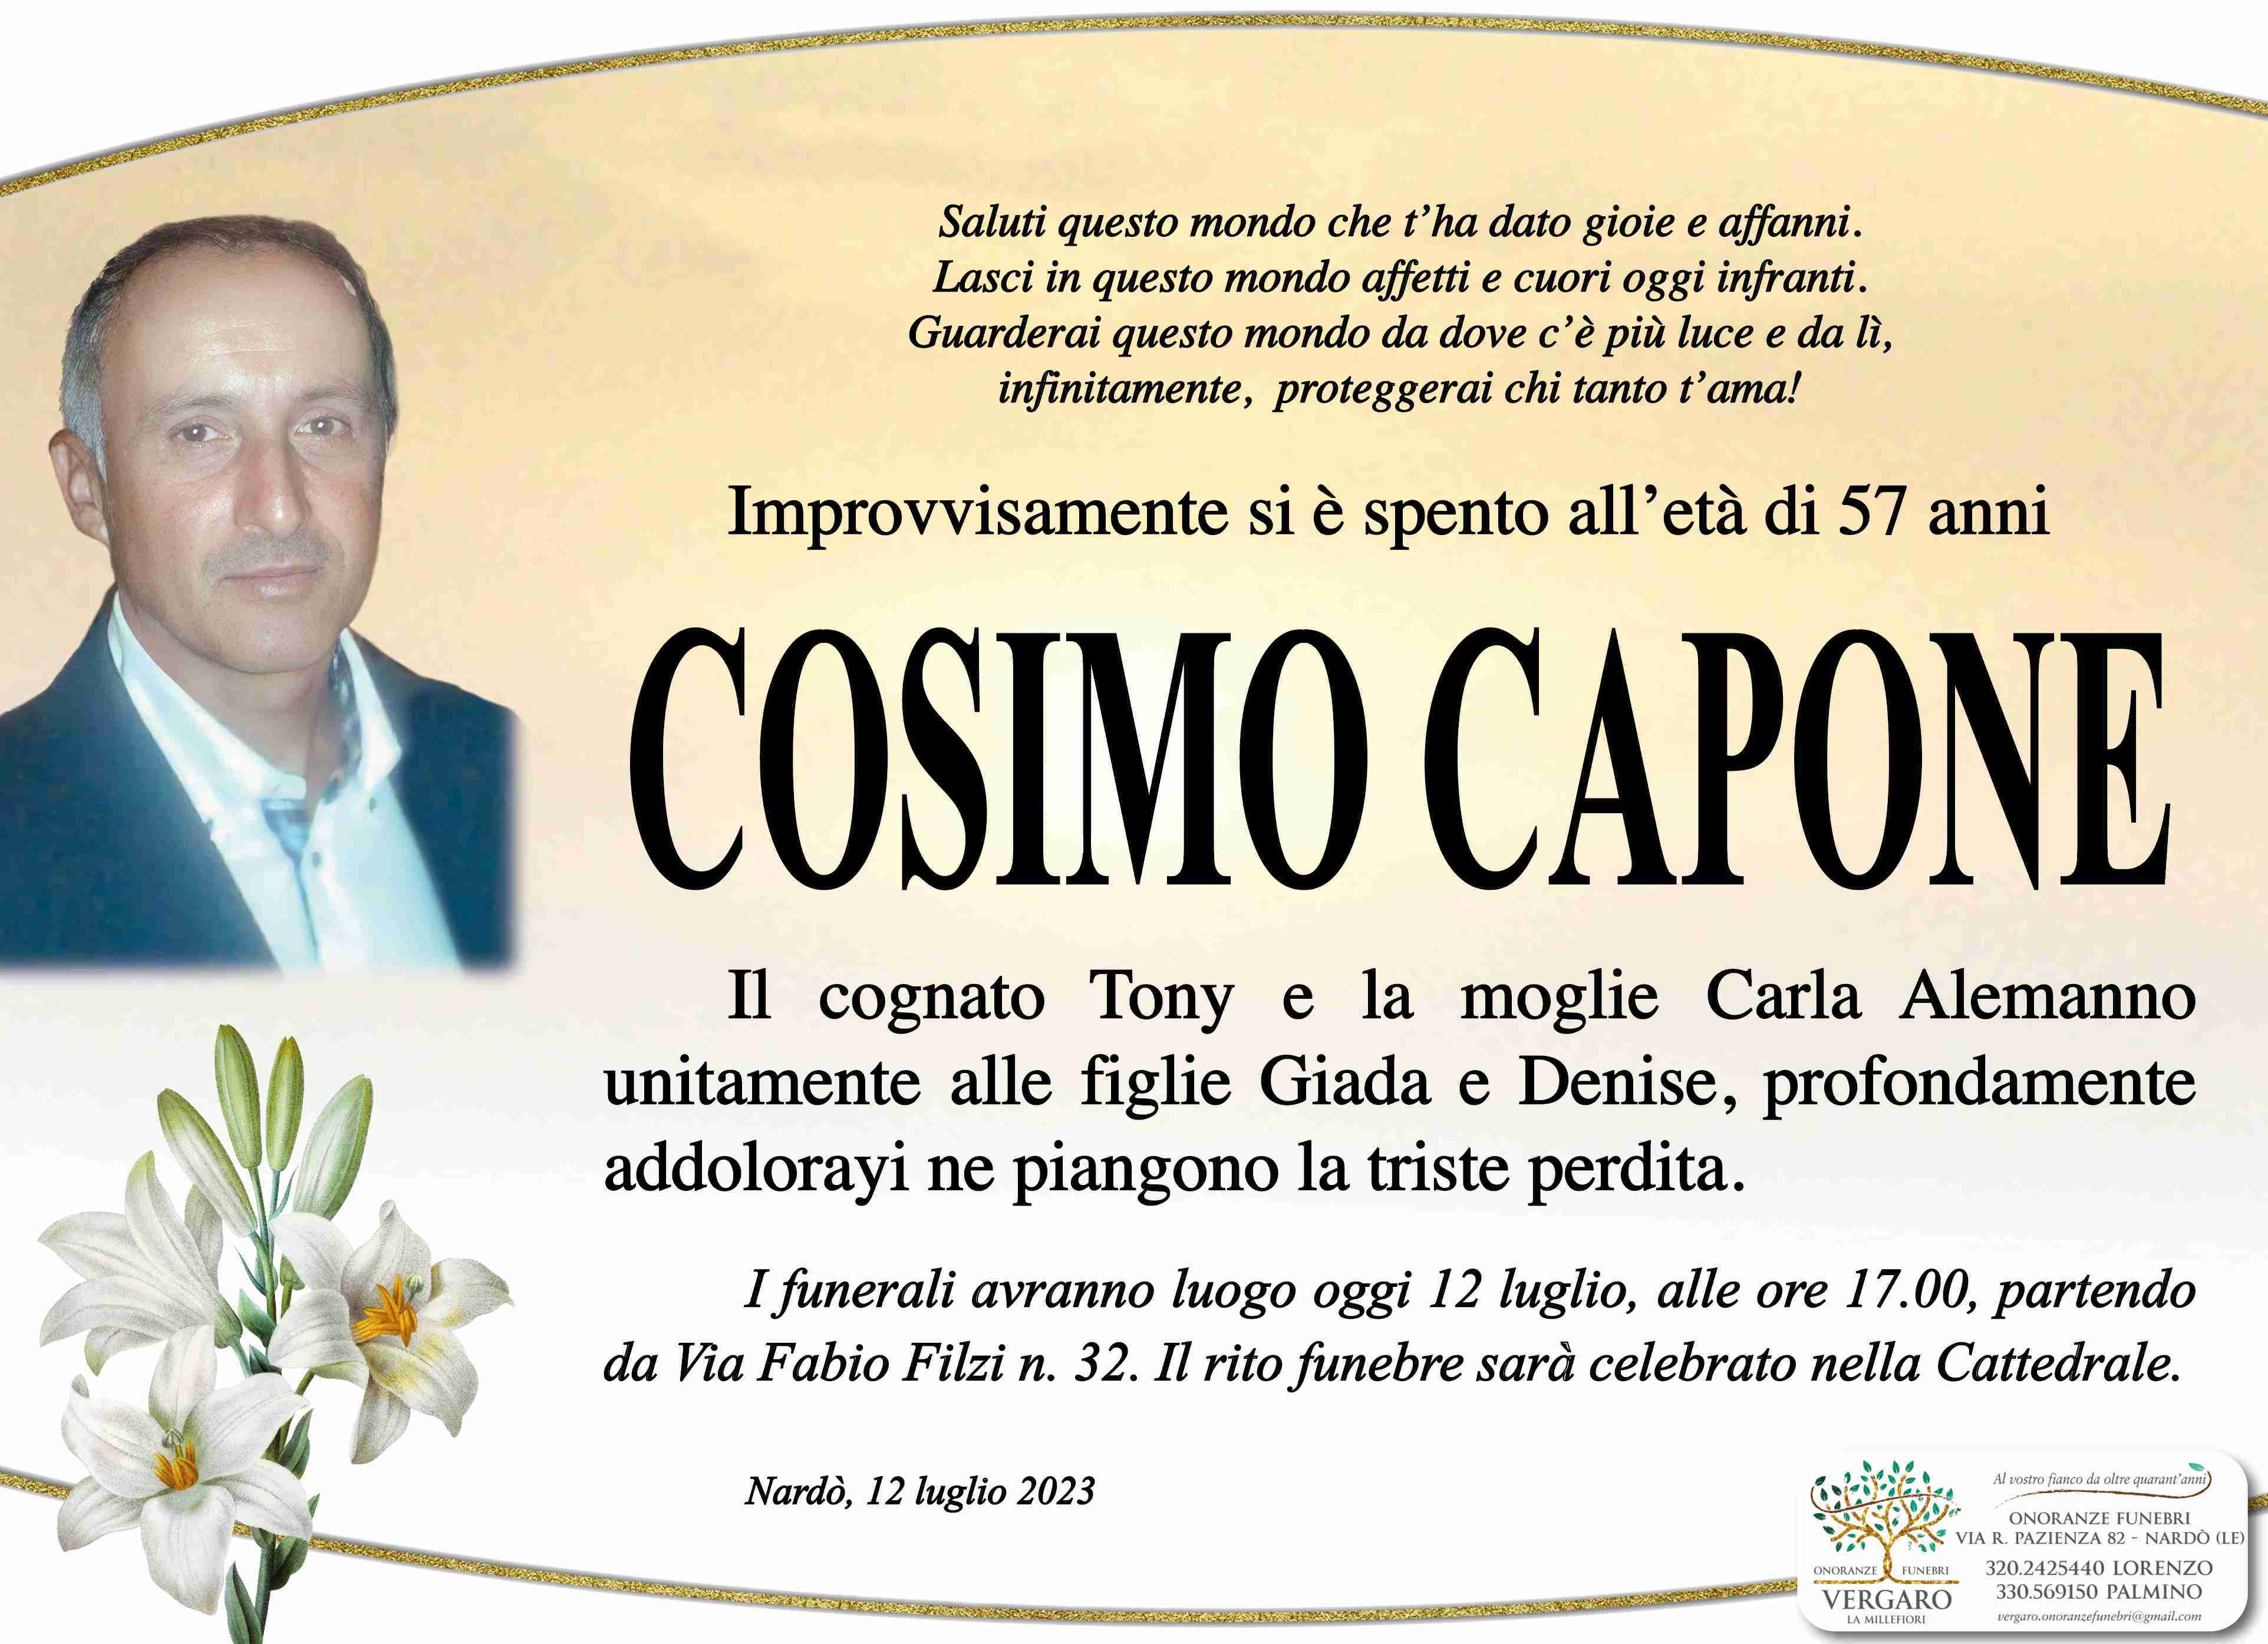 Cosimo Capone